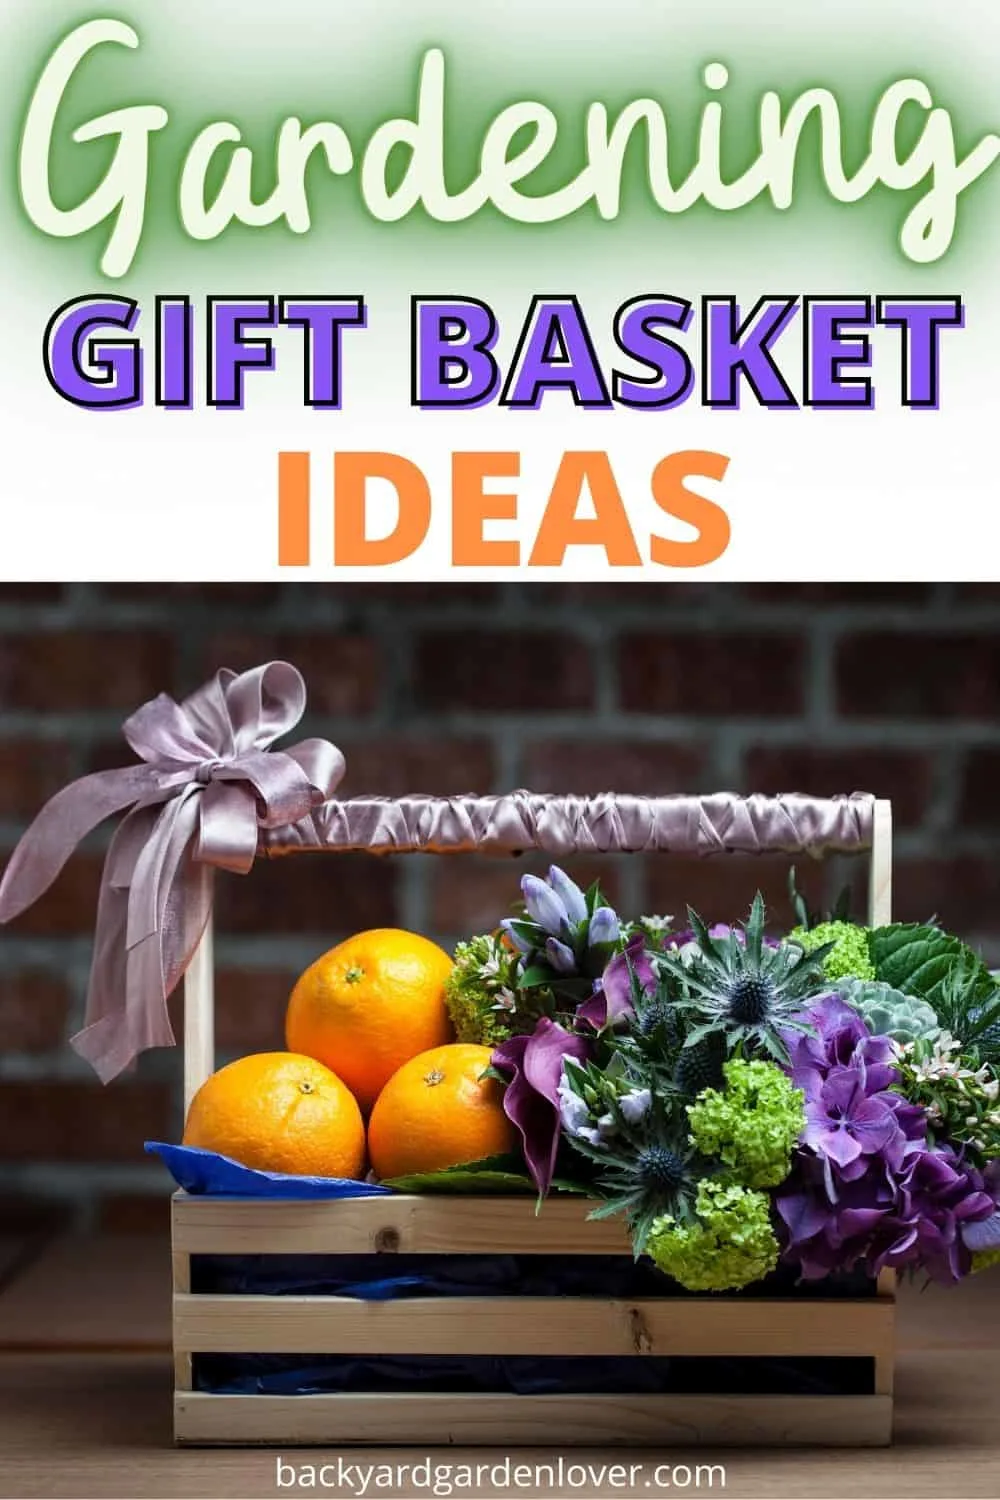 Garening gift basket ideas - Pinterest image